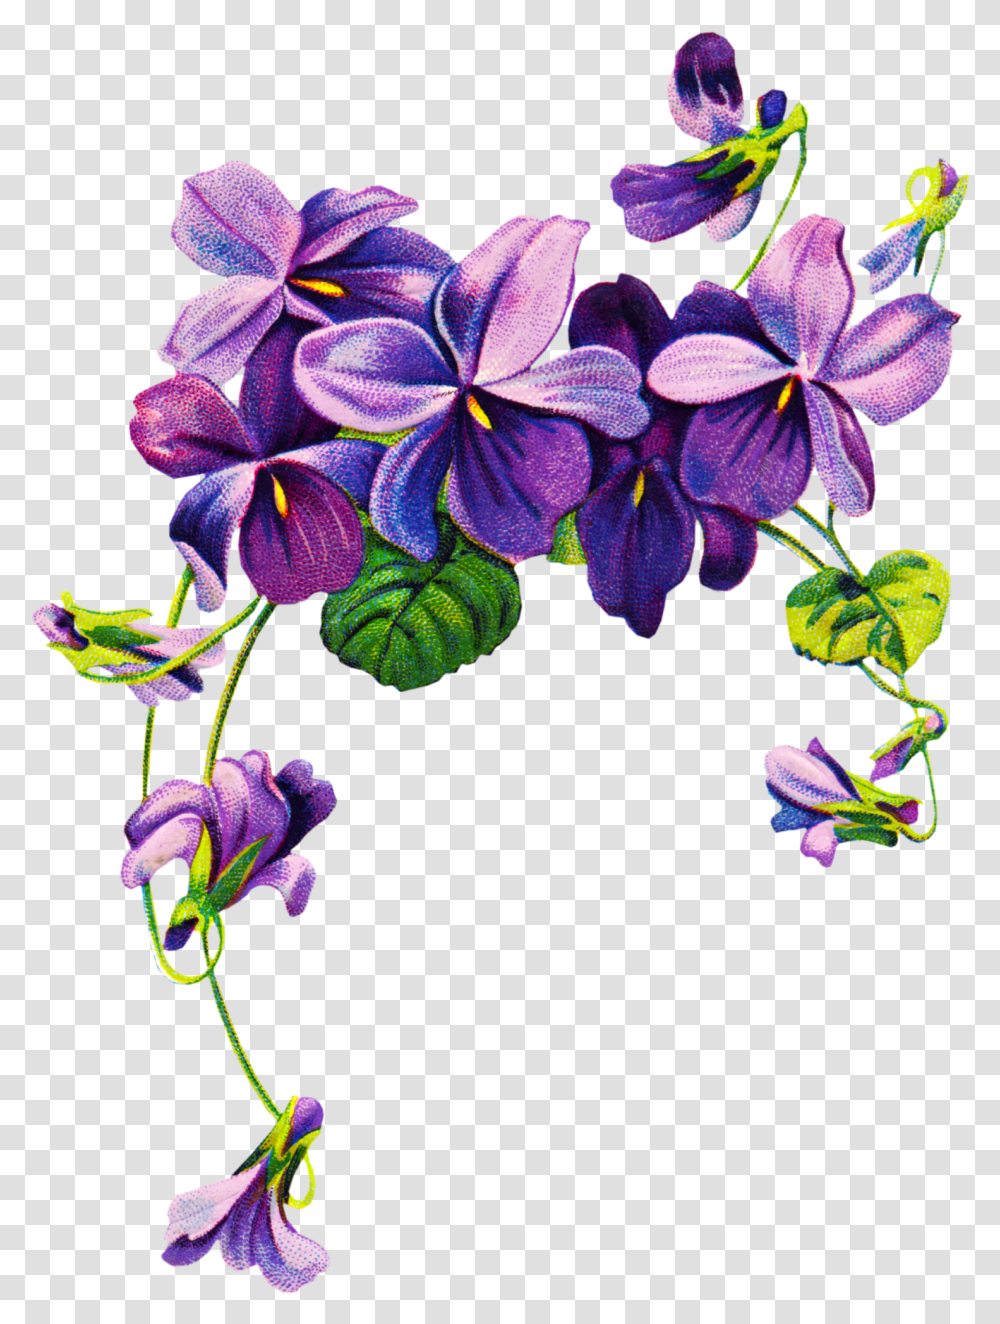 Violet Free Download Purple Watercolor Flowers, Plant, Floral Design, Pattern, Graphics Transparent Png